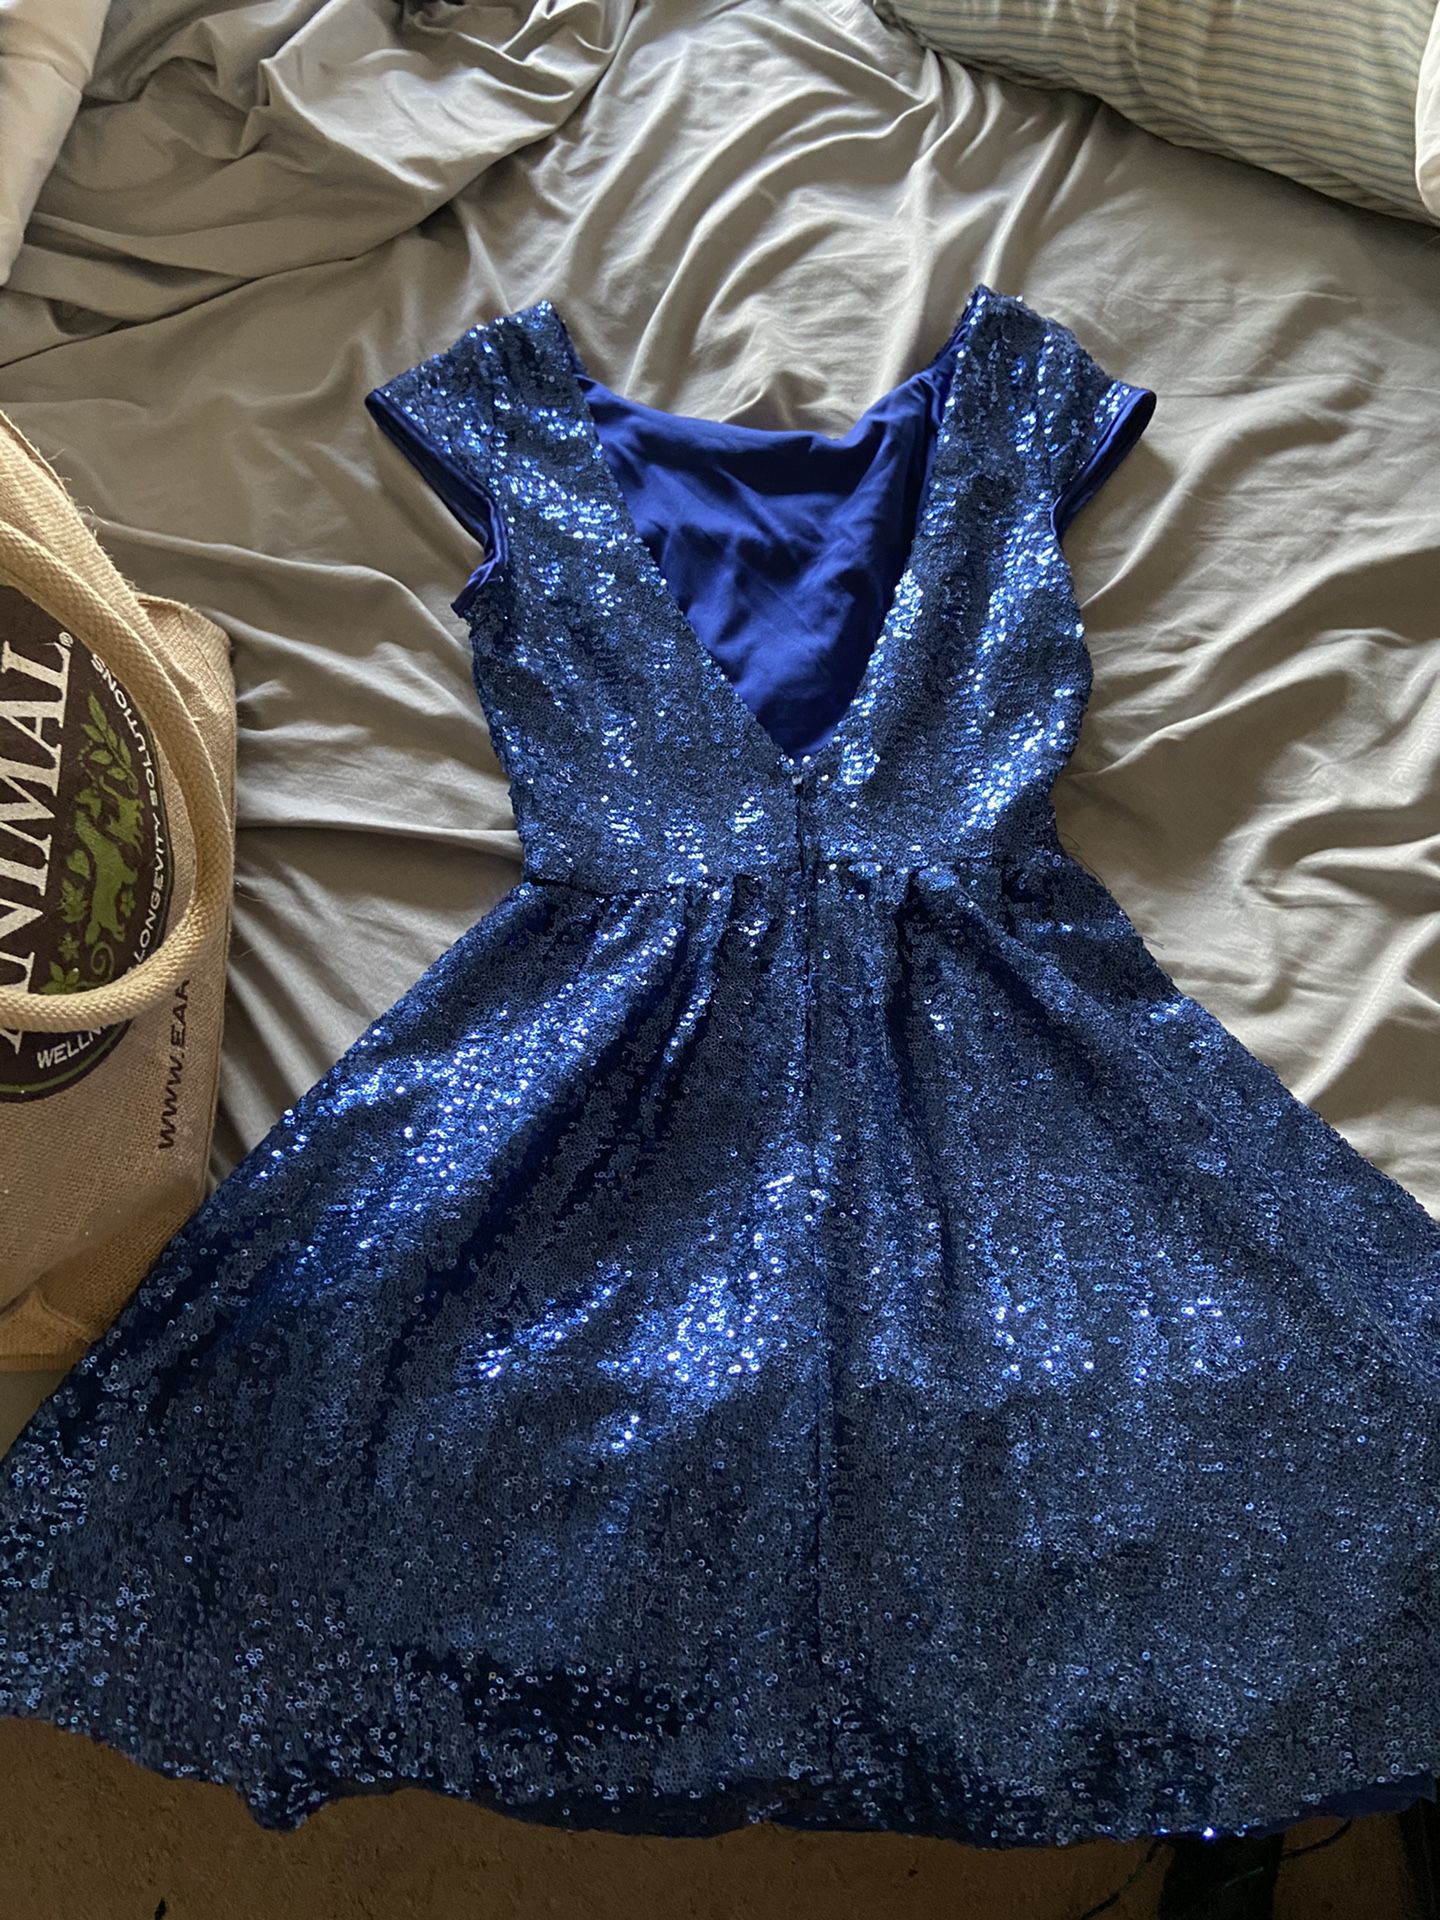 Dillard’s prom dress